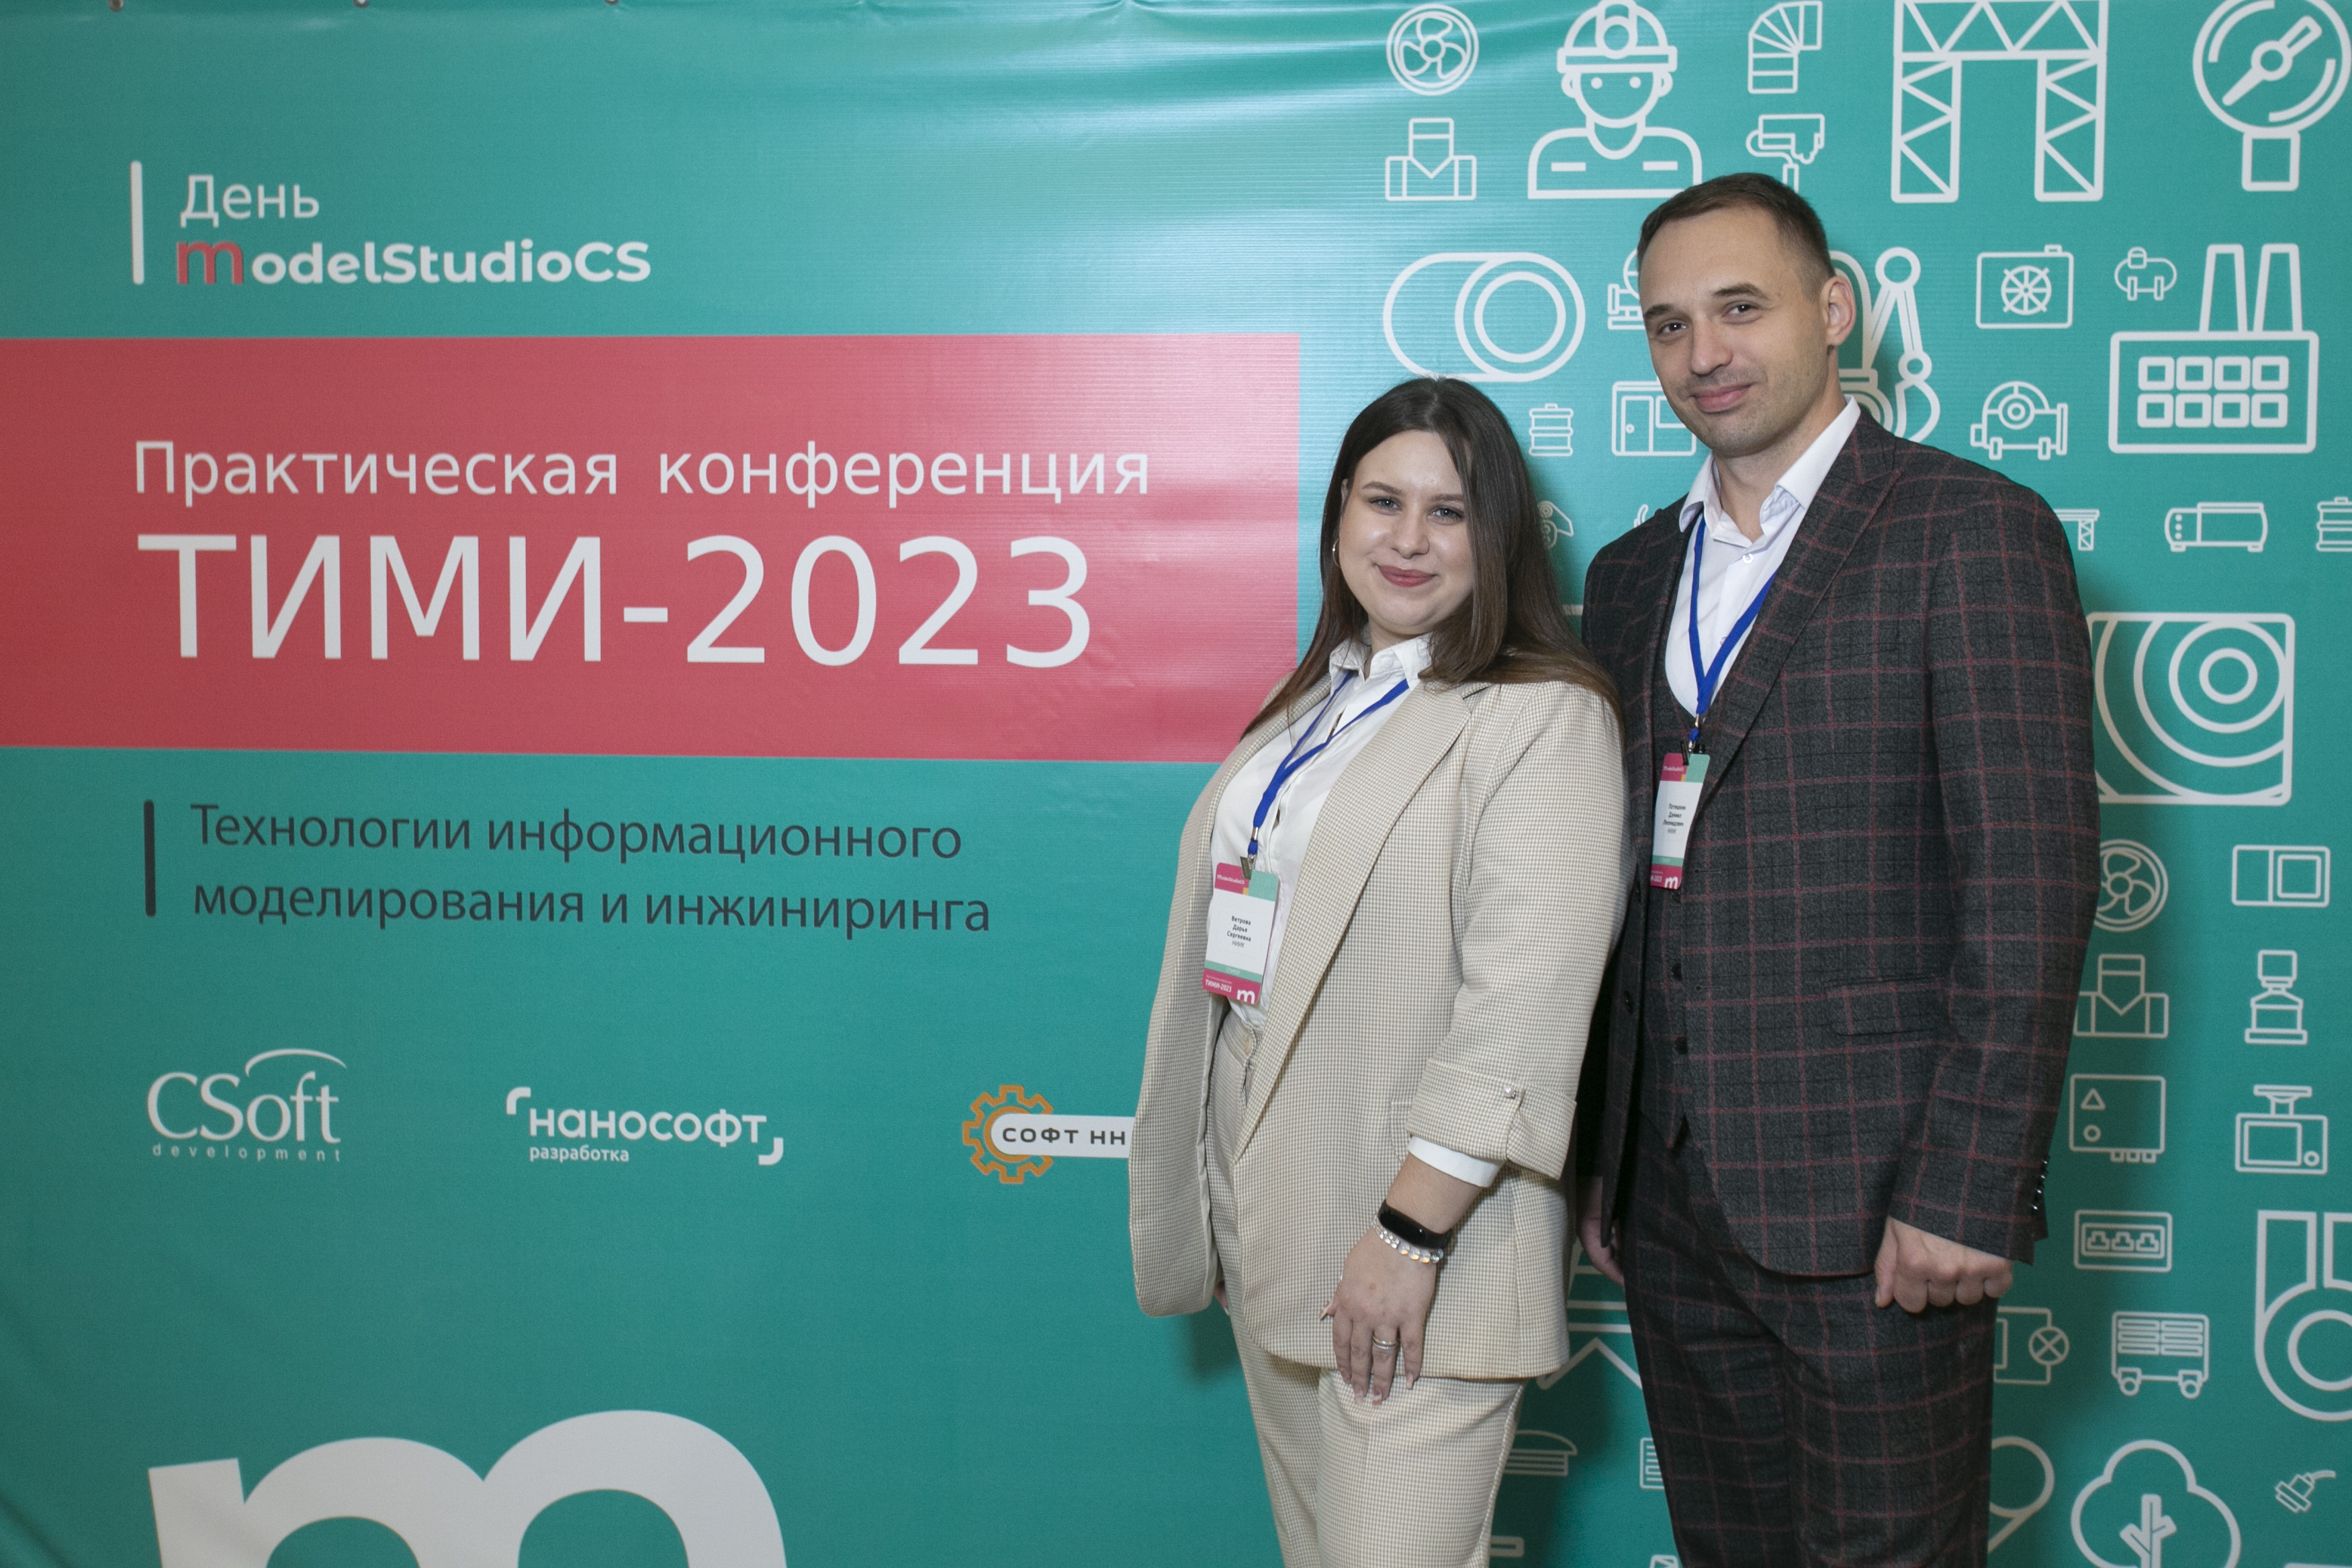 Сотрудники МТО-1 выступили с докладом на конференции «ТИМИ-2023»